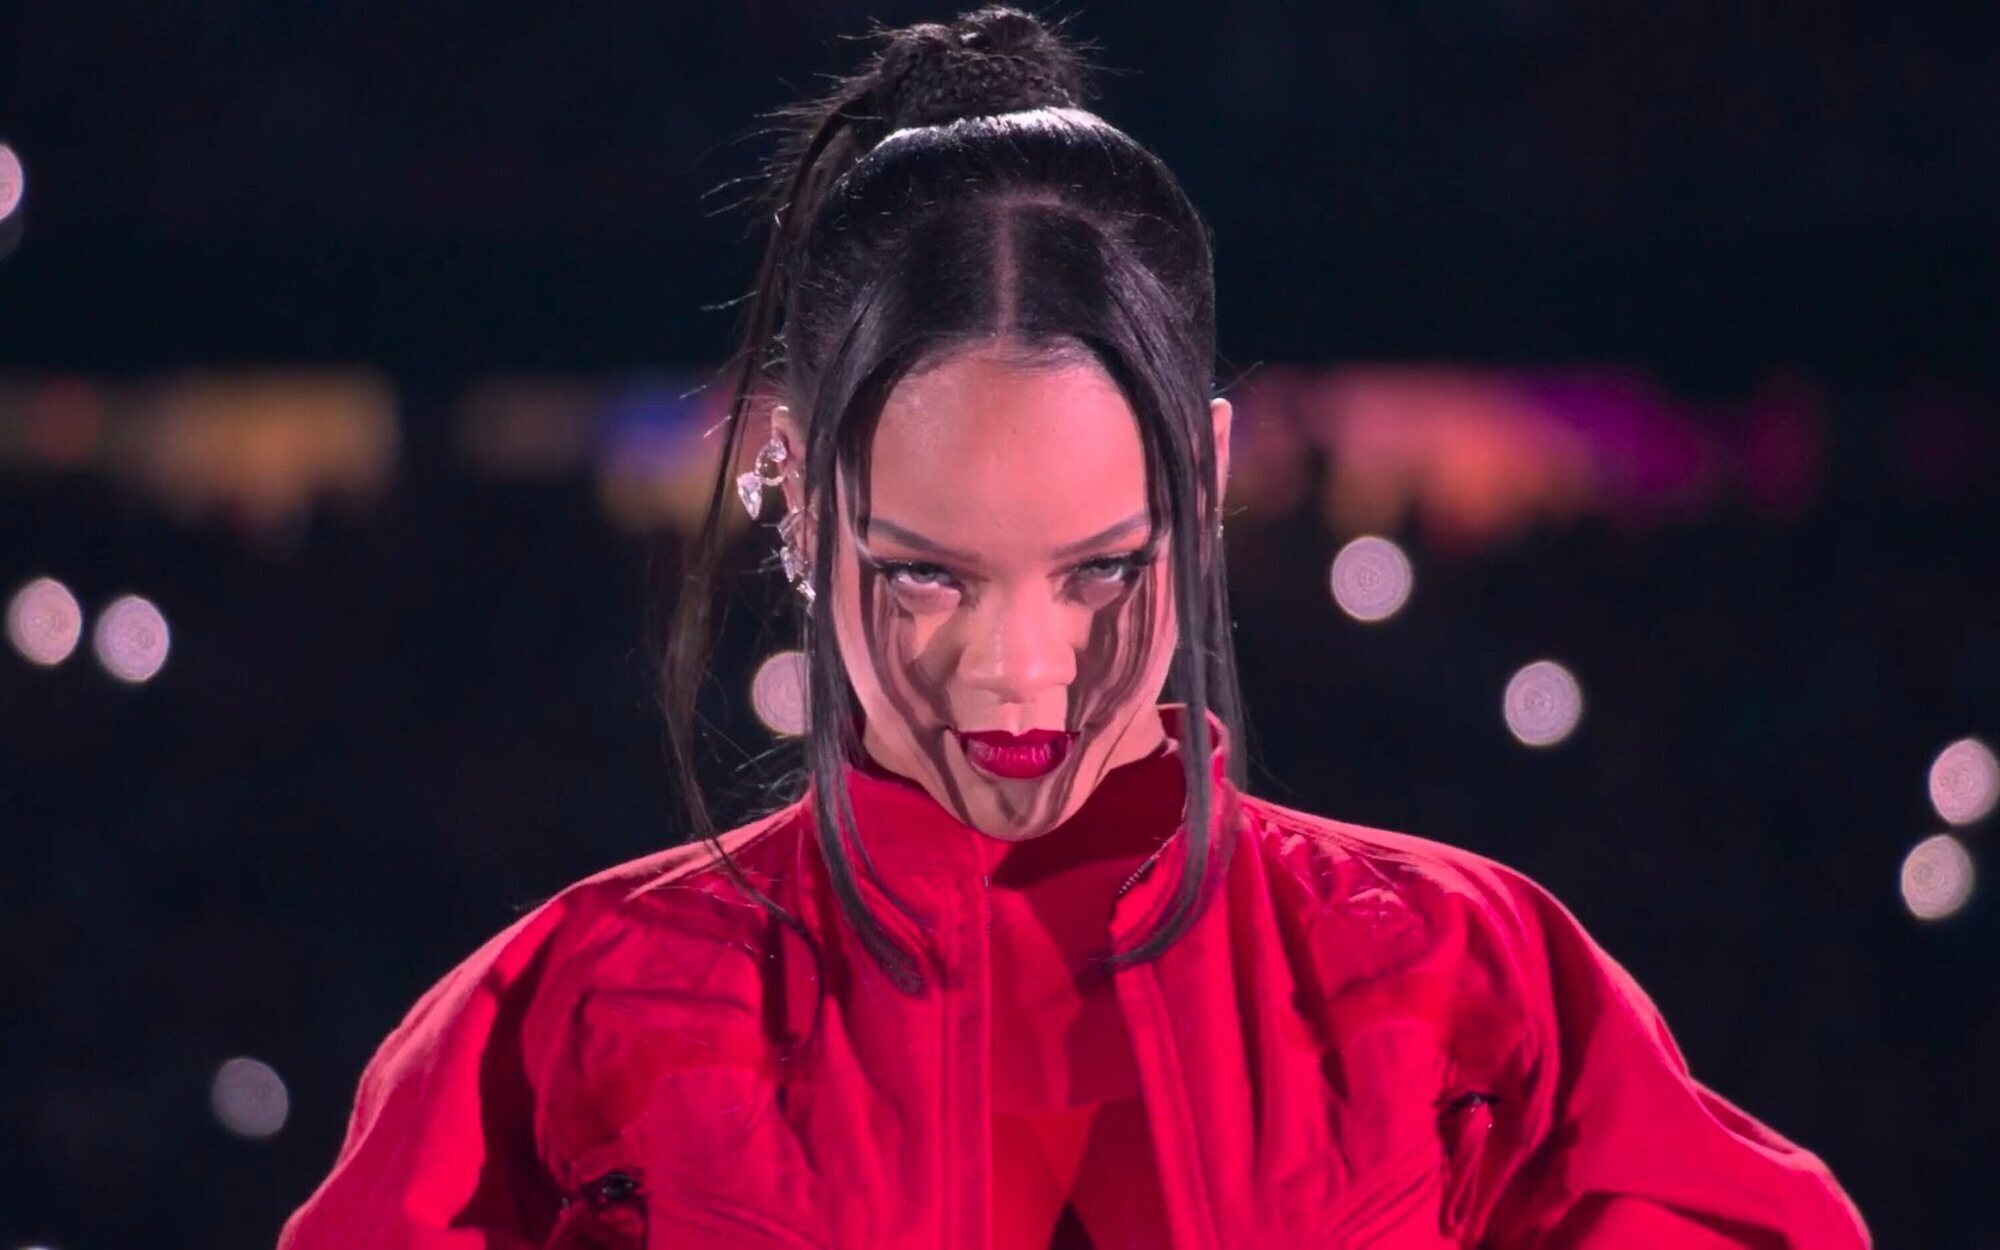 Así fue la impactante actuación de Rihanna en la Super Bowl 2023 donde